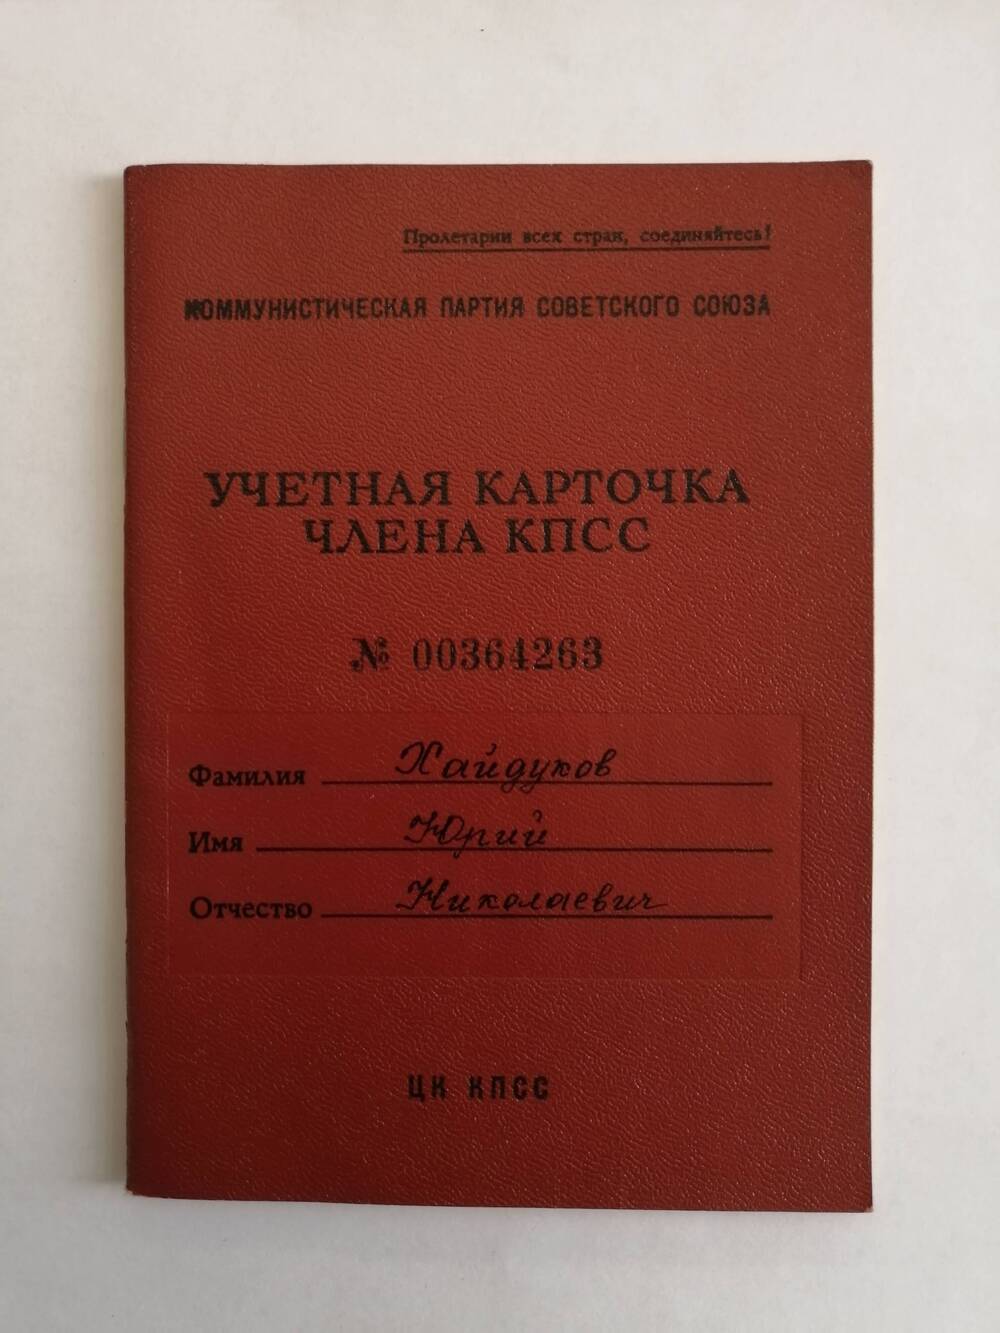 Карточка учетная члена КПСС №00364263 Хайдукова Юрия Николаевича.